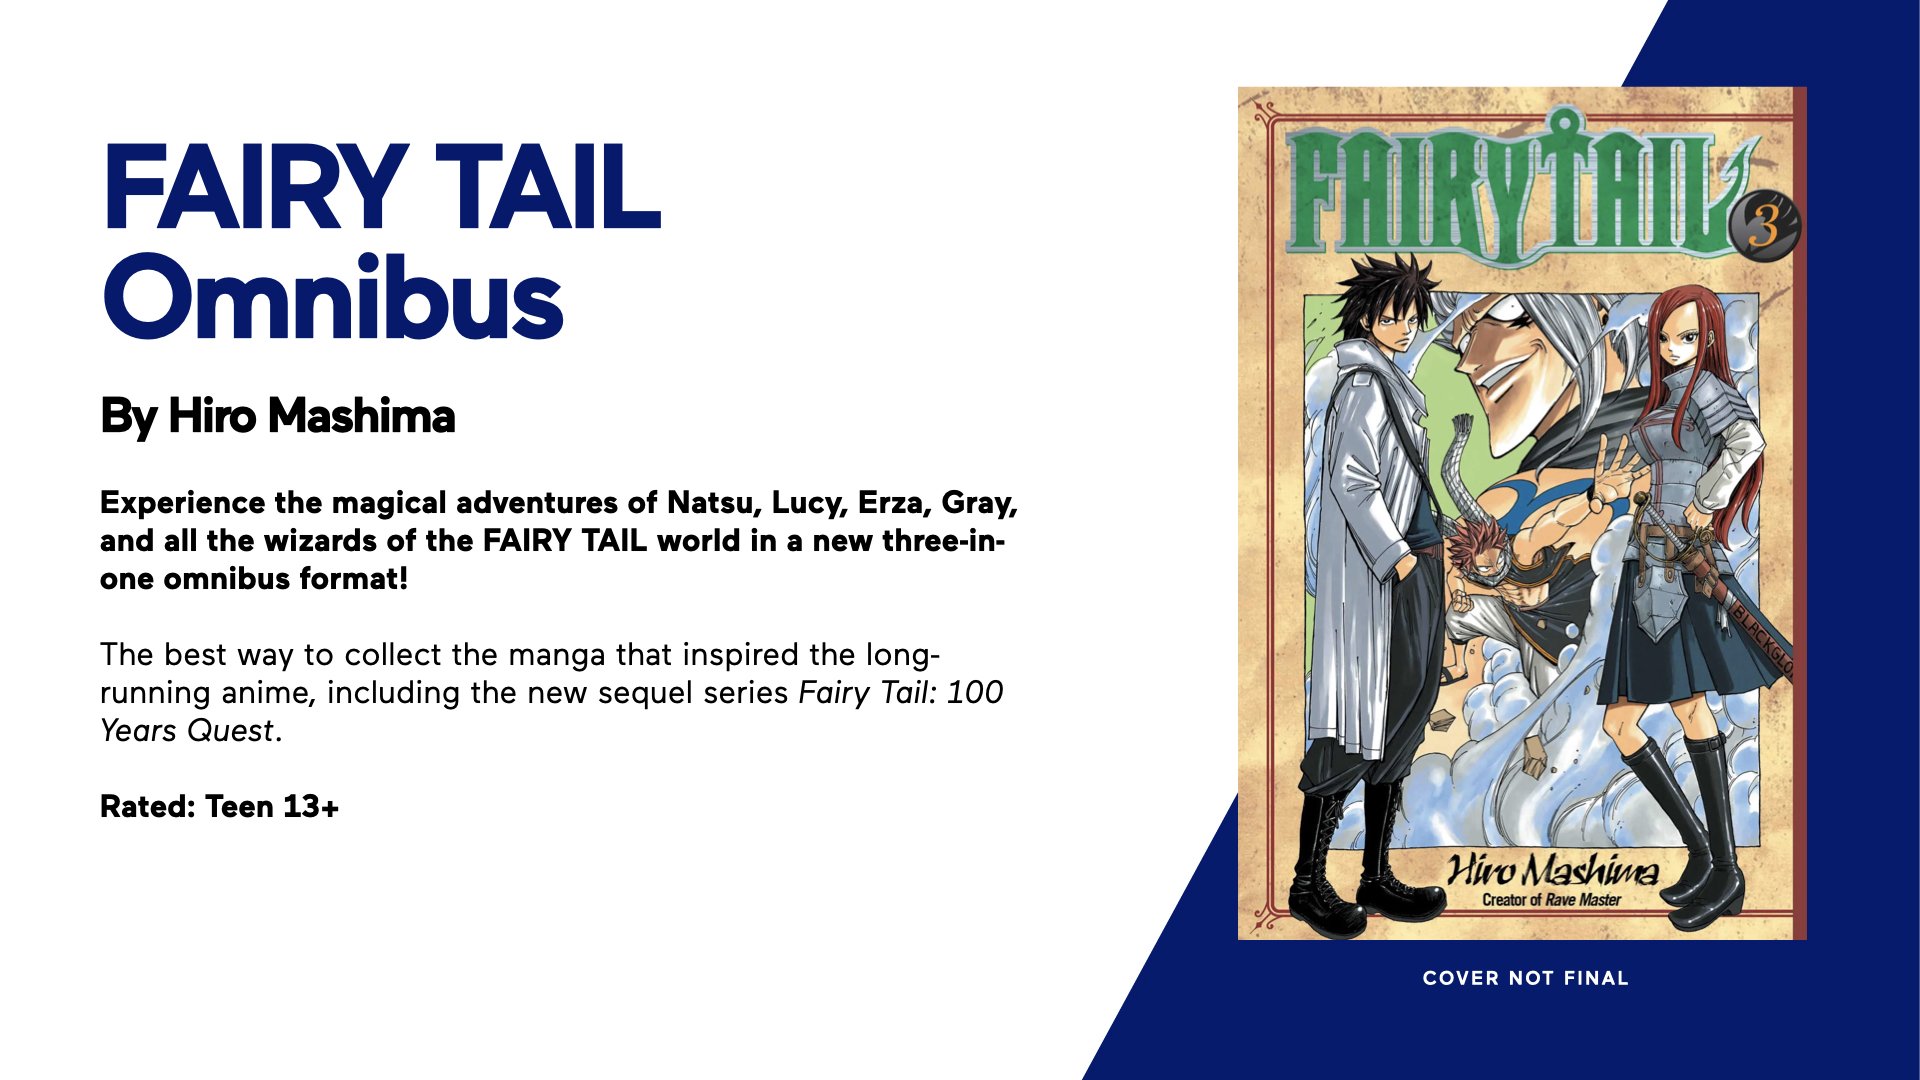 Fairy Tail Sequel Anime Announced